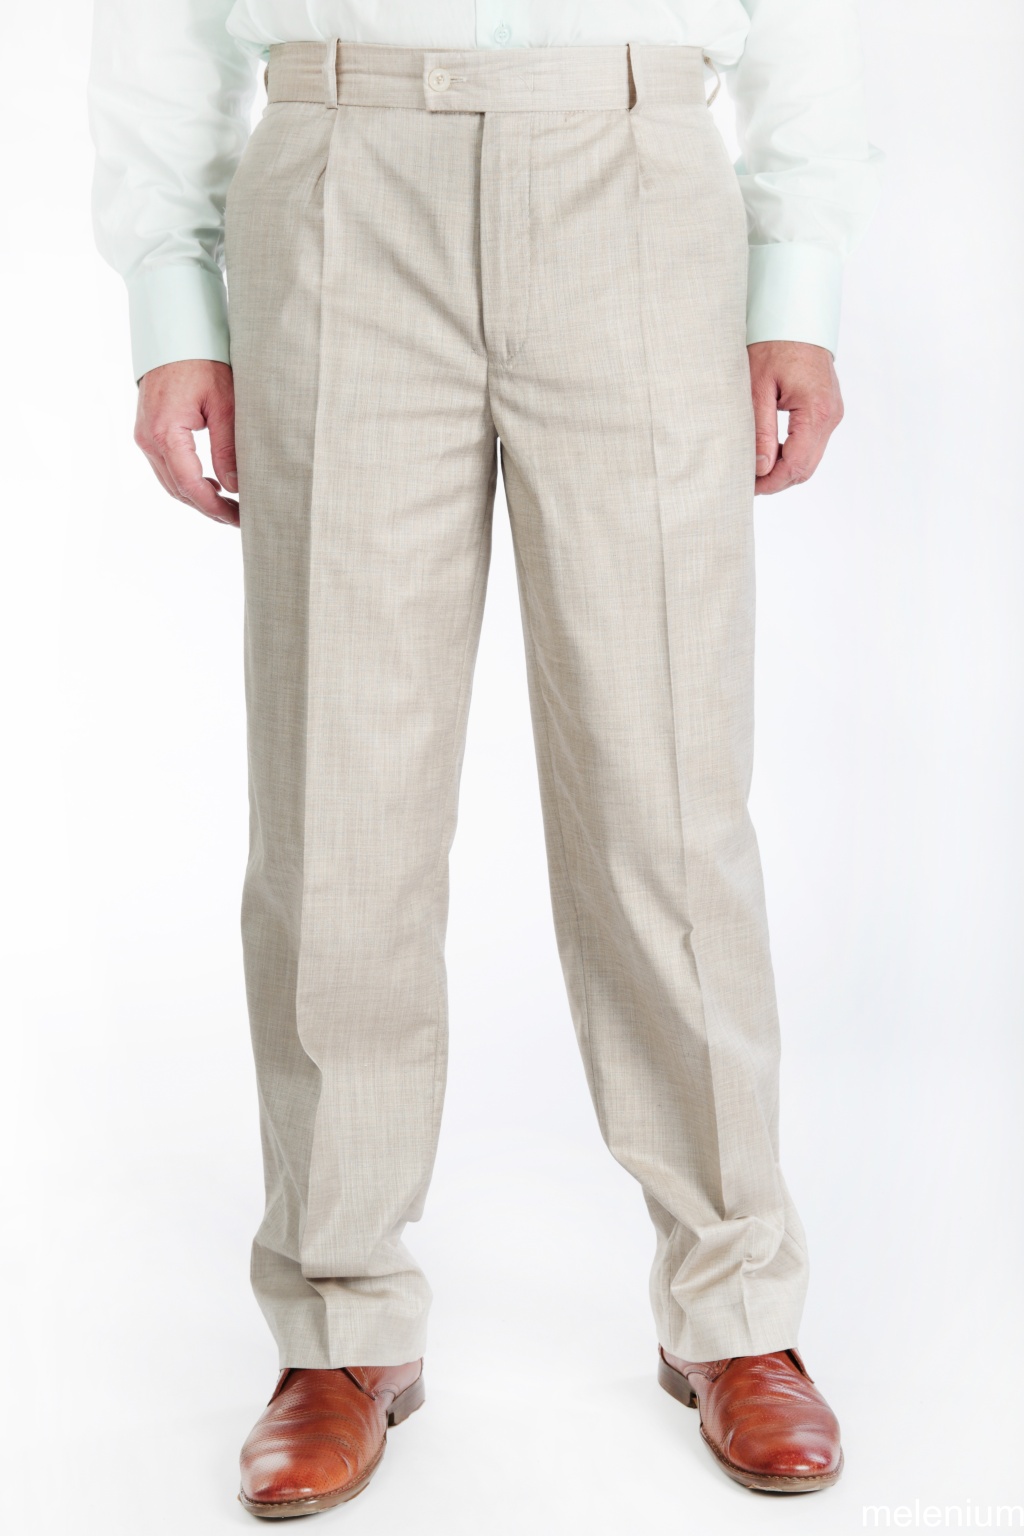 Бежевые мужские брюки с высокой талией и посадкой купить недорого в Москве- интернет-магазин «Мир брюк»